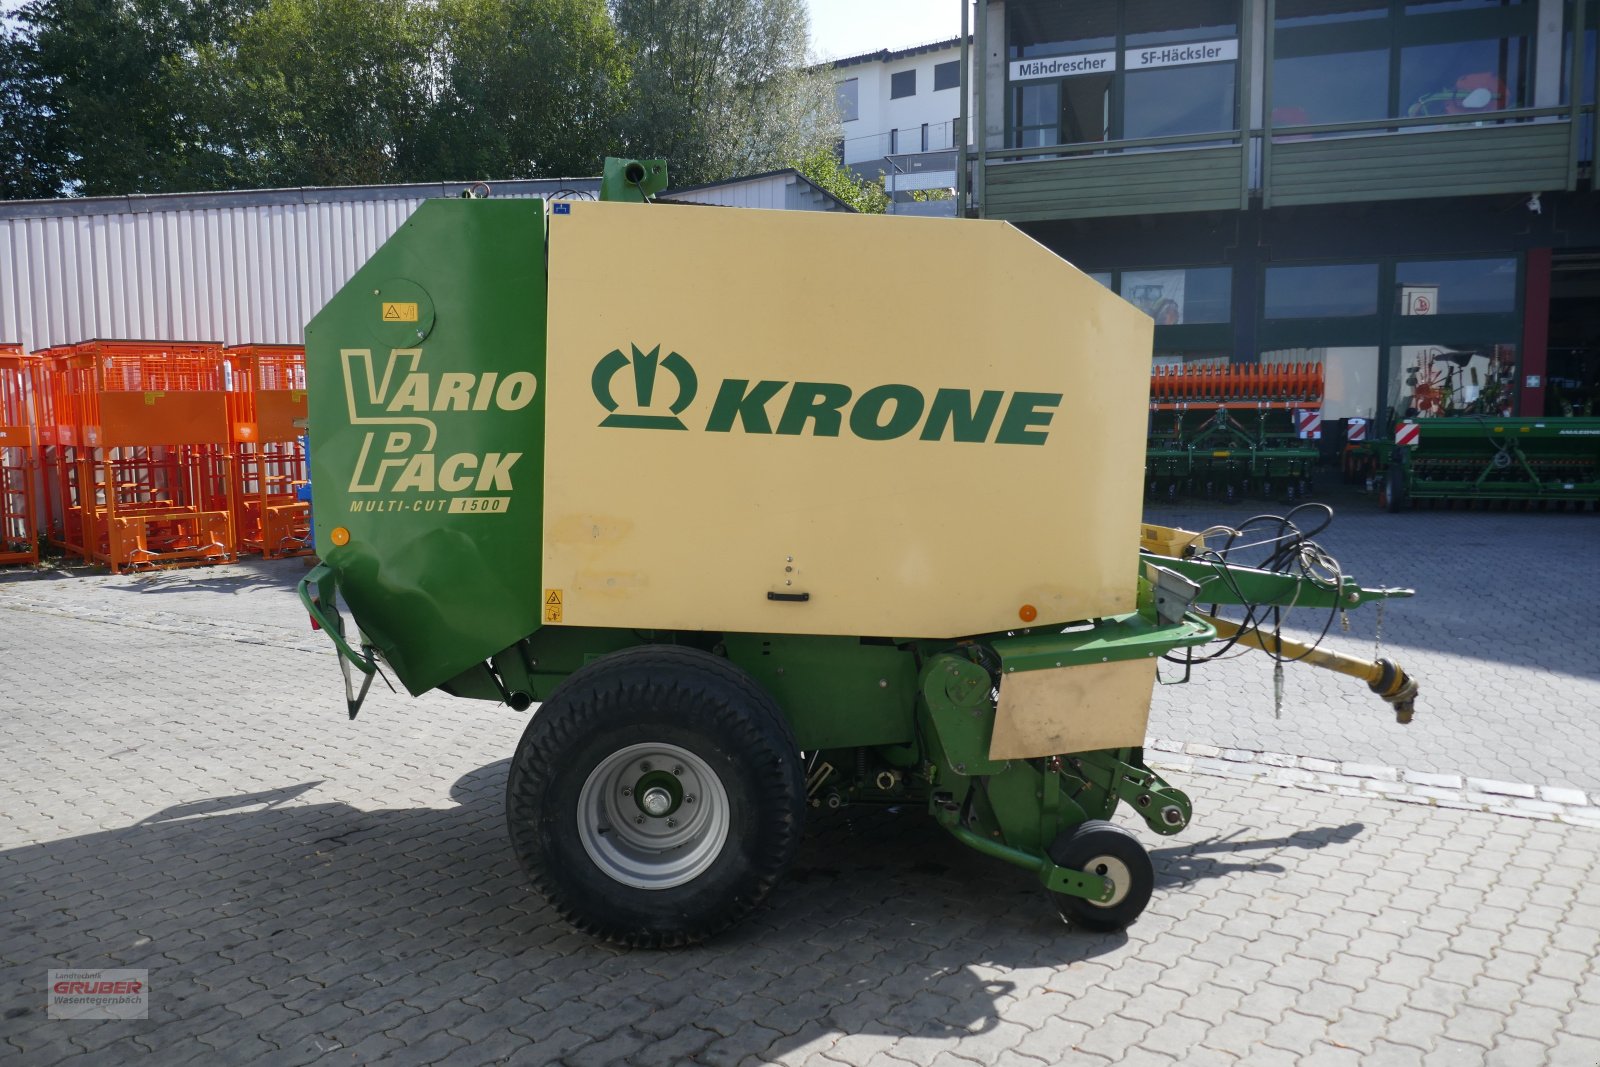 Rundballenpresse des Typs Krone Vario Pack Multi-Cut 1500, Gebrauchtmaschine in Dorfen (Bild 3)